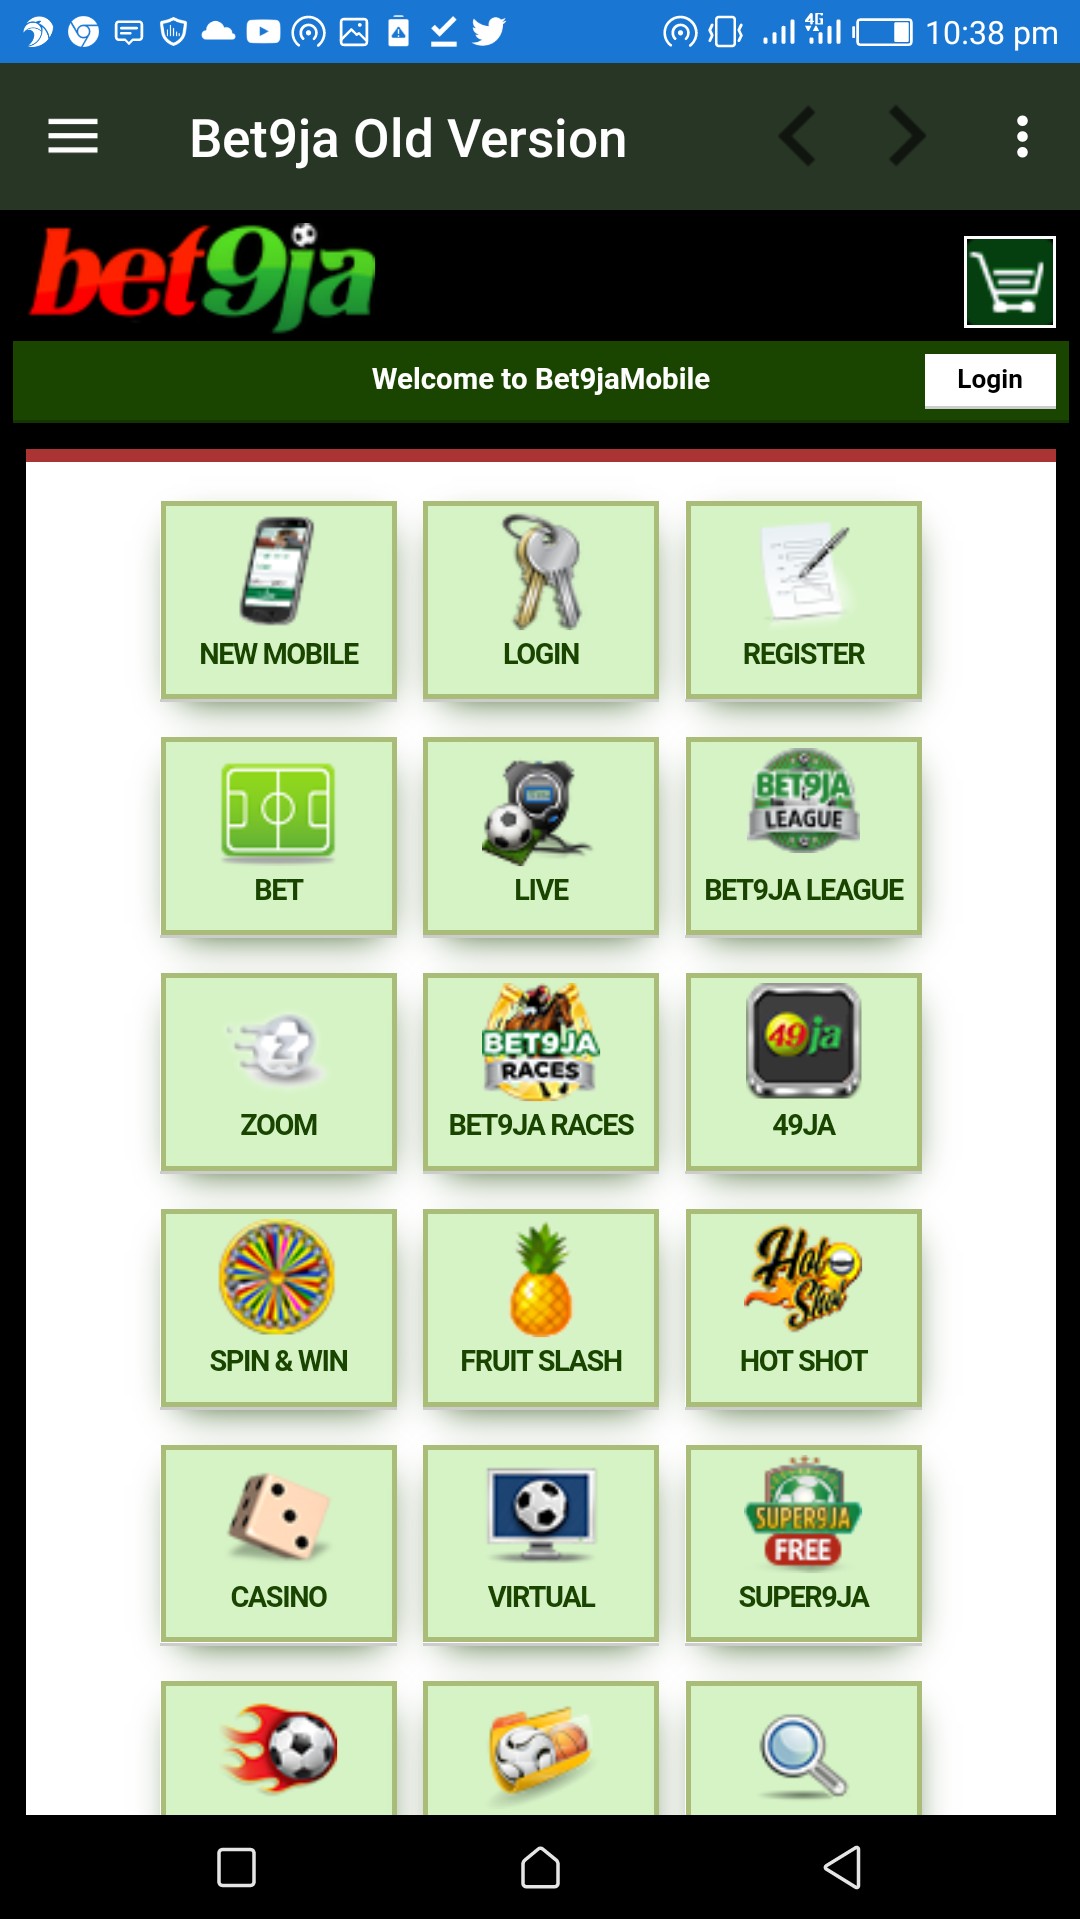 Screenshot 20200111 223818 - Bet9ja Mobile App Old Version V2 (Original) Download